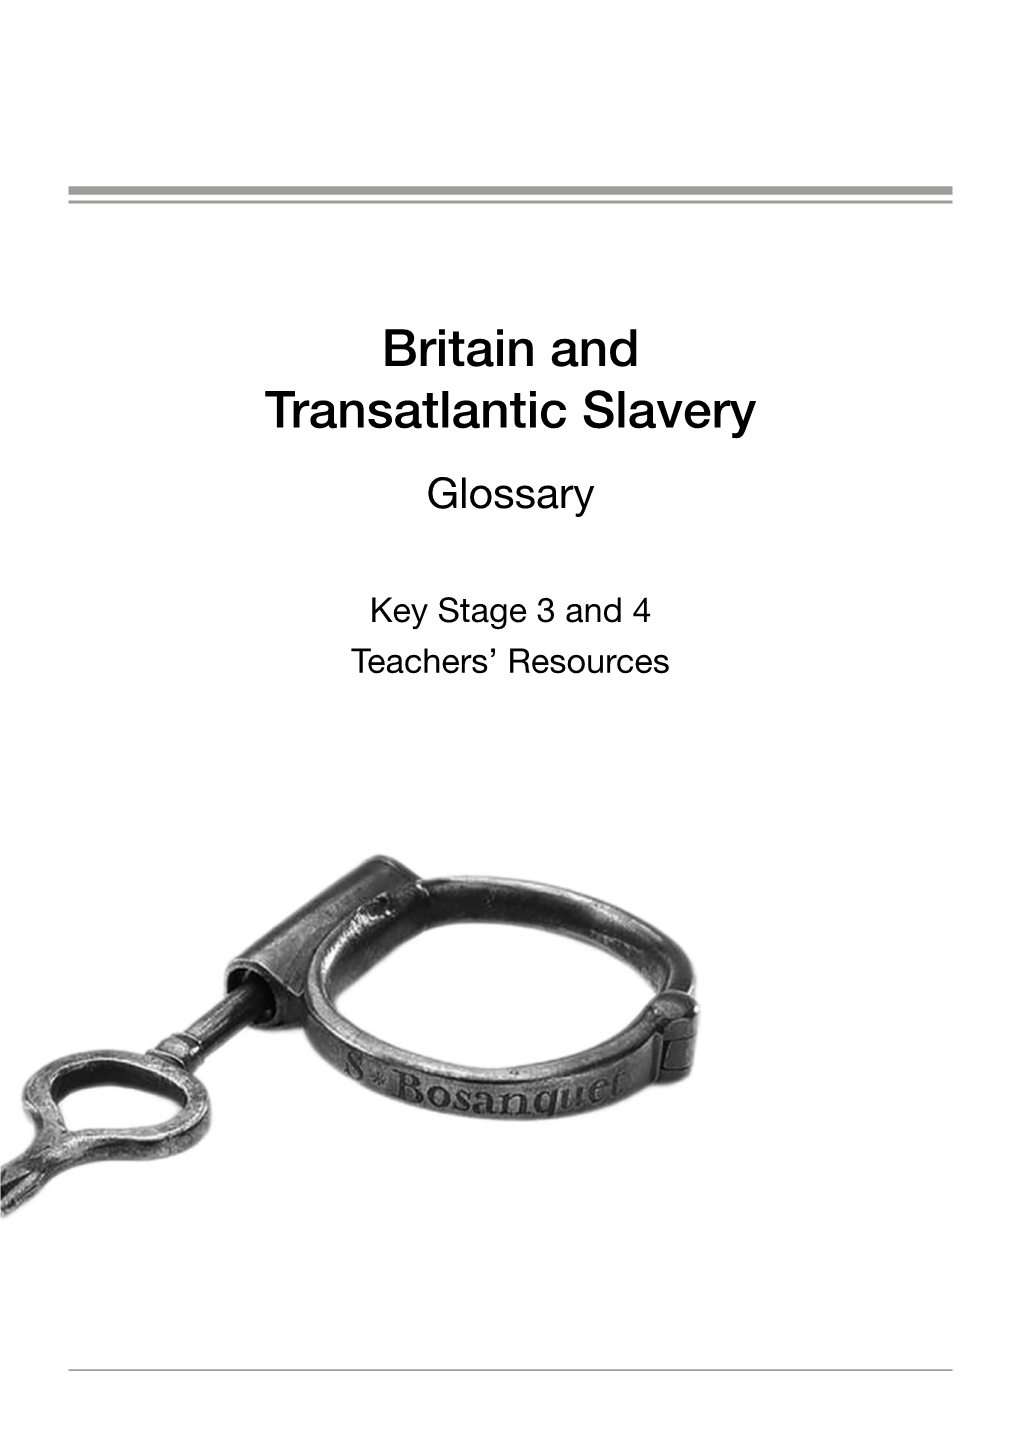 Britain and Transatlantic Slavery Glossary